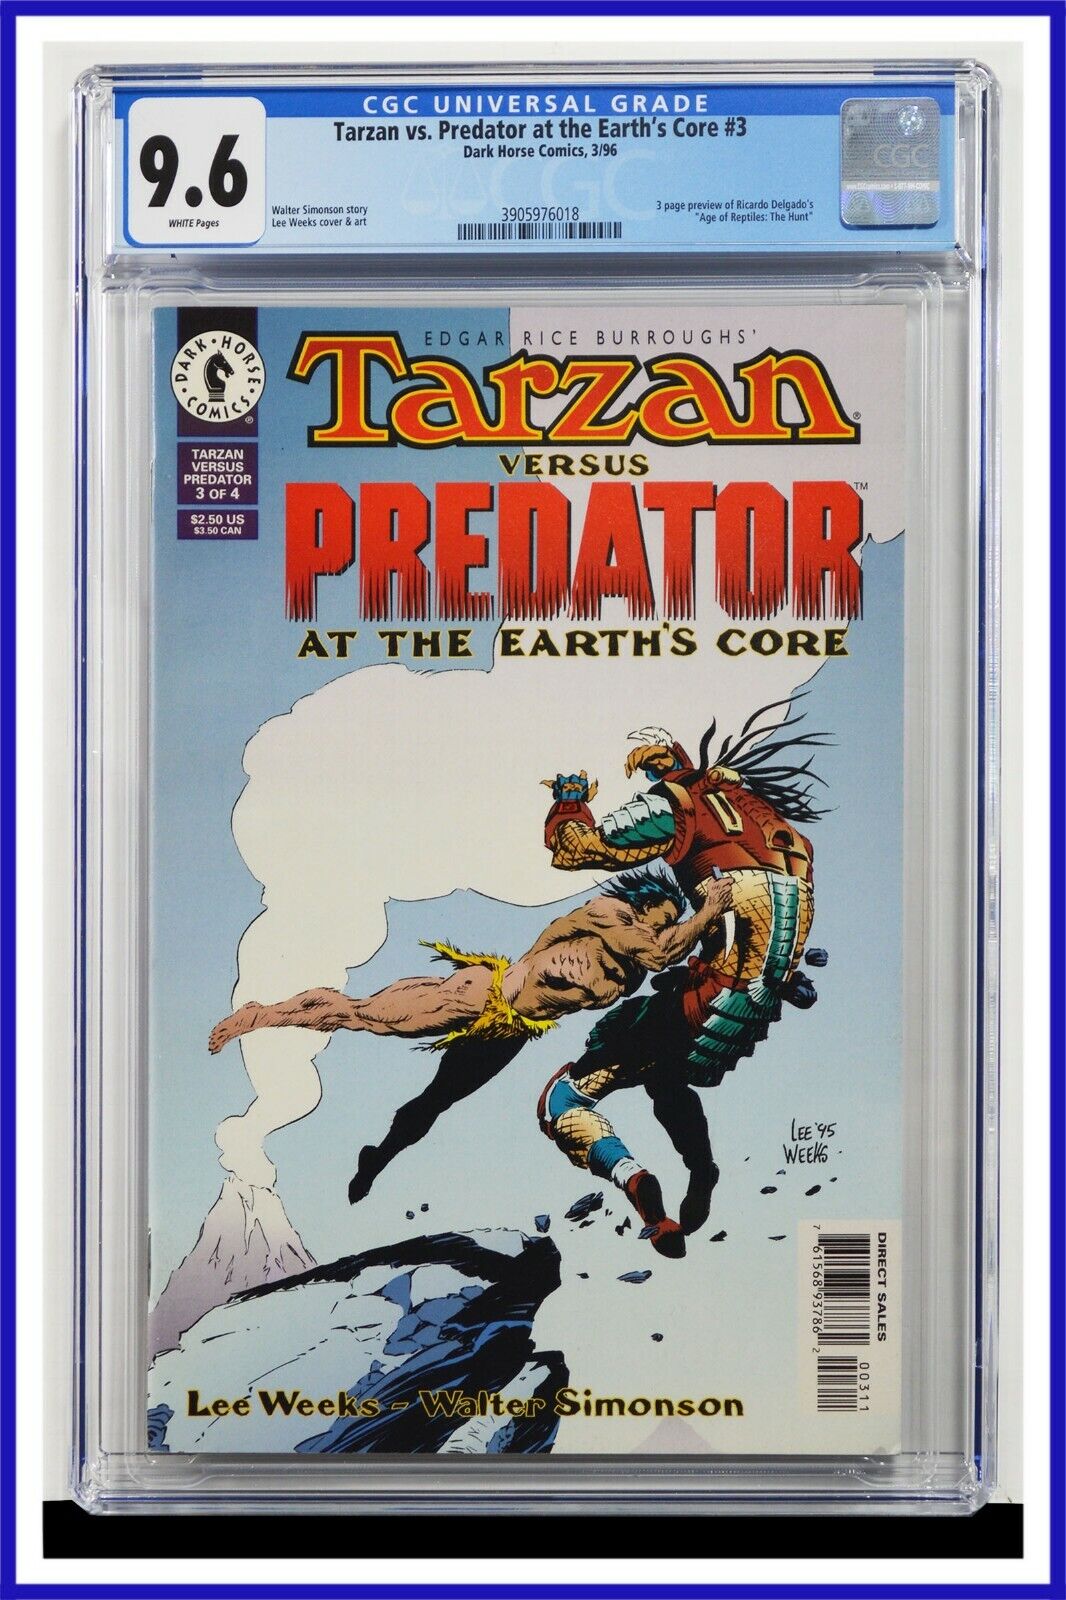 Tarzan vs. Predator At The Earth's Core #3 CGC Graded 9.6 March 1996 Comic Book.